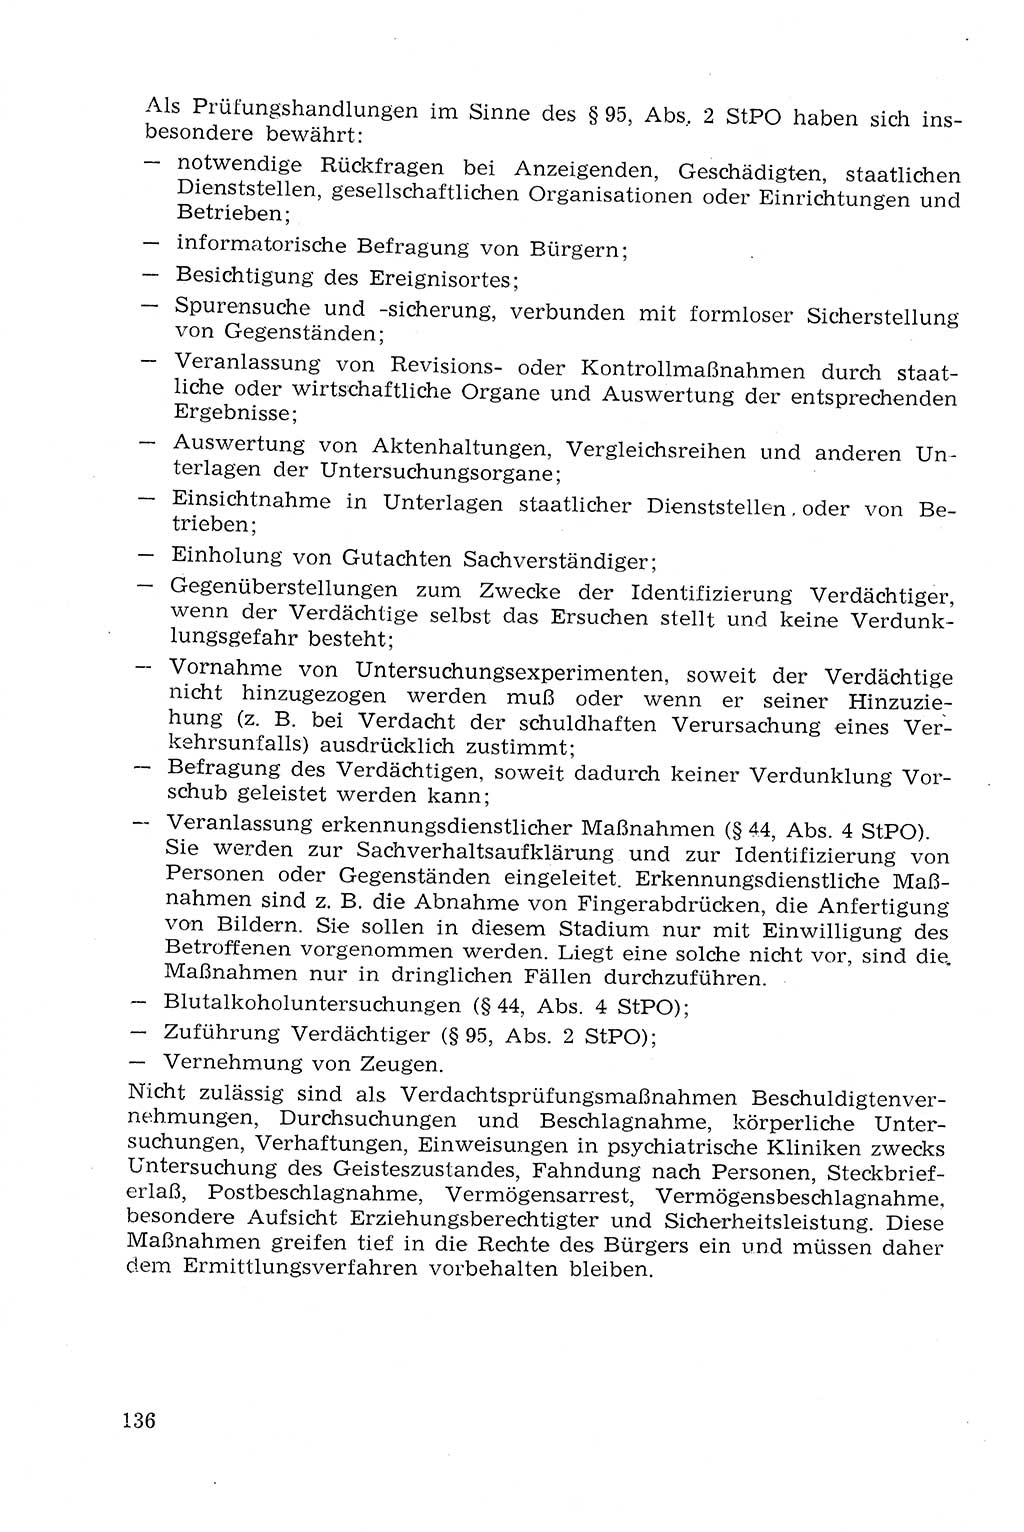 Strafprozeßrecht der DDR (Deutsche Demokratische Republik), Lehrmaterial 1969, Seite 136 (Strafprozeßr. DDR Lehrmat. 1969, S. 136)